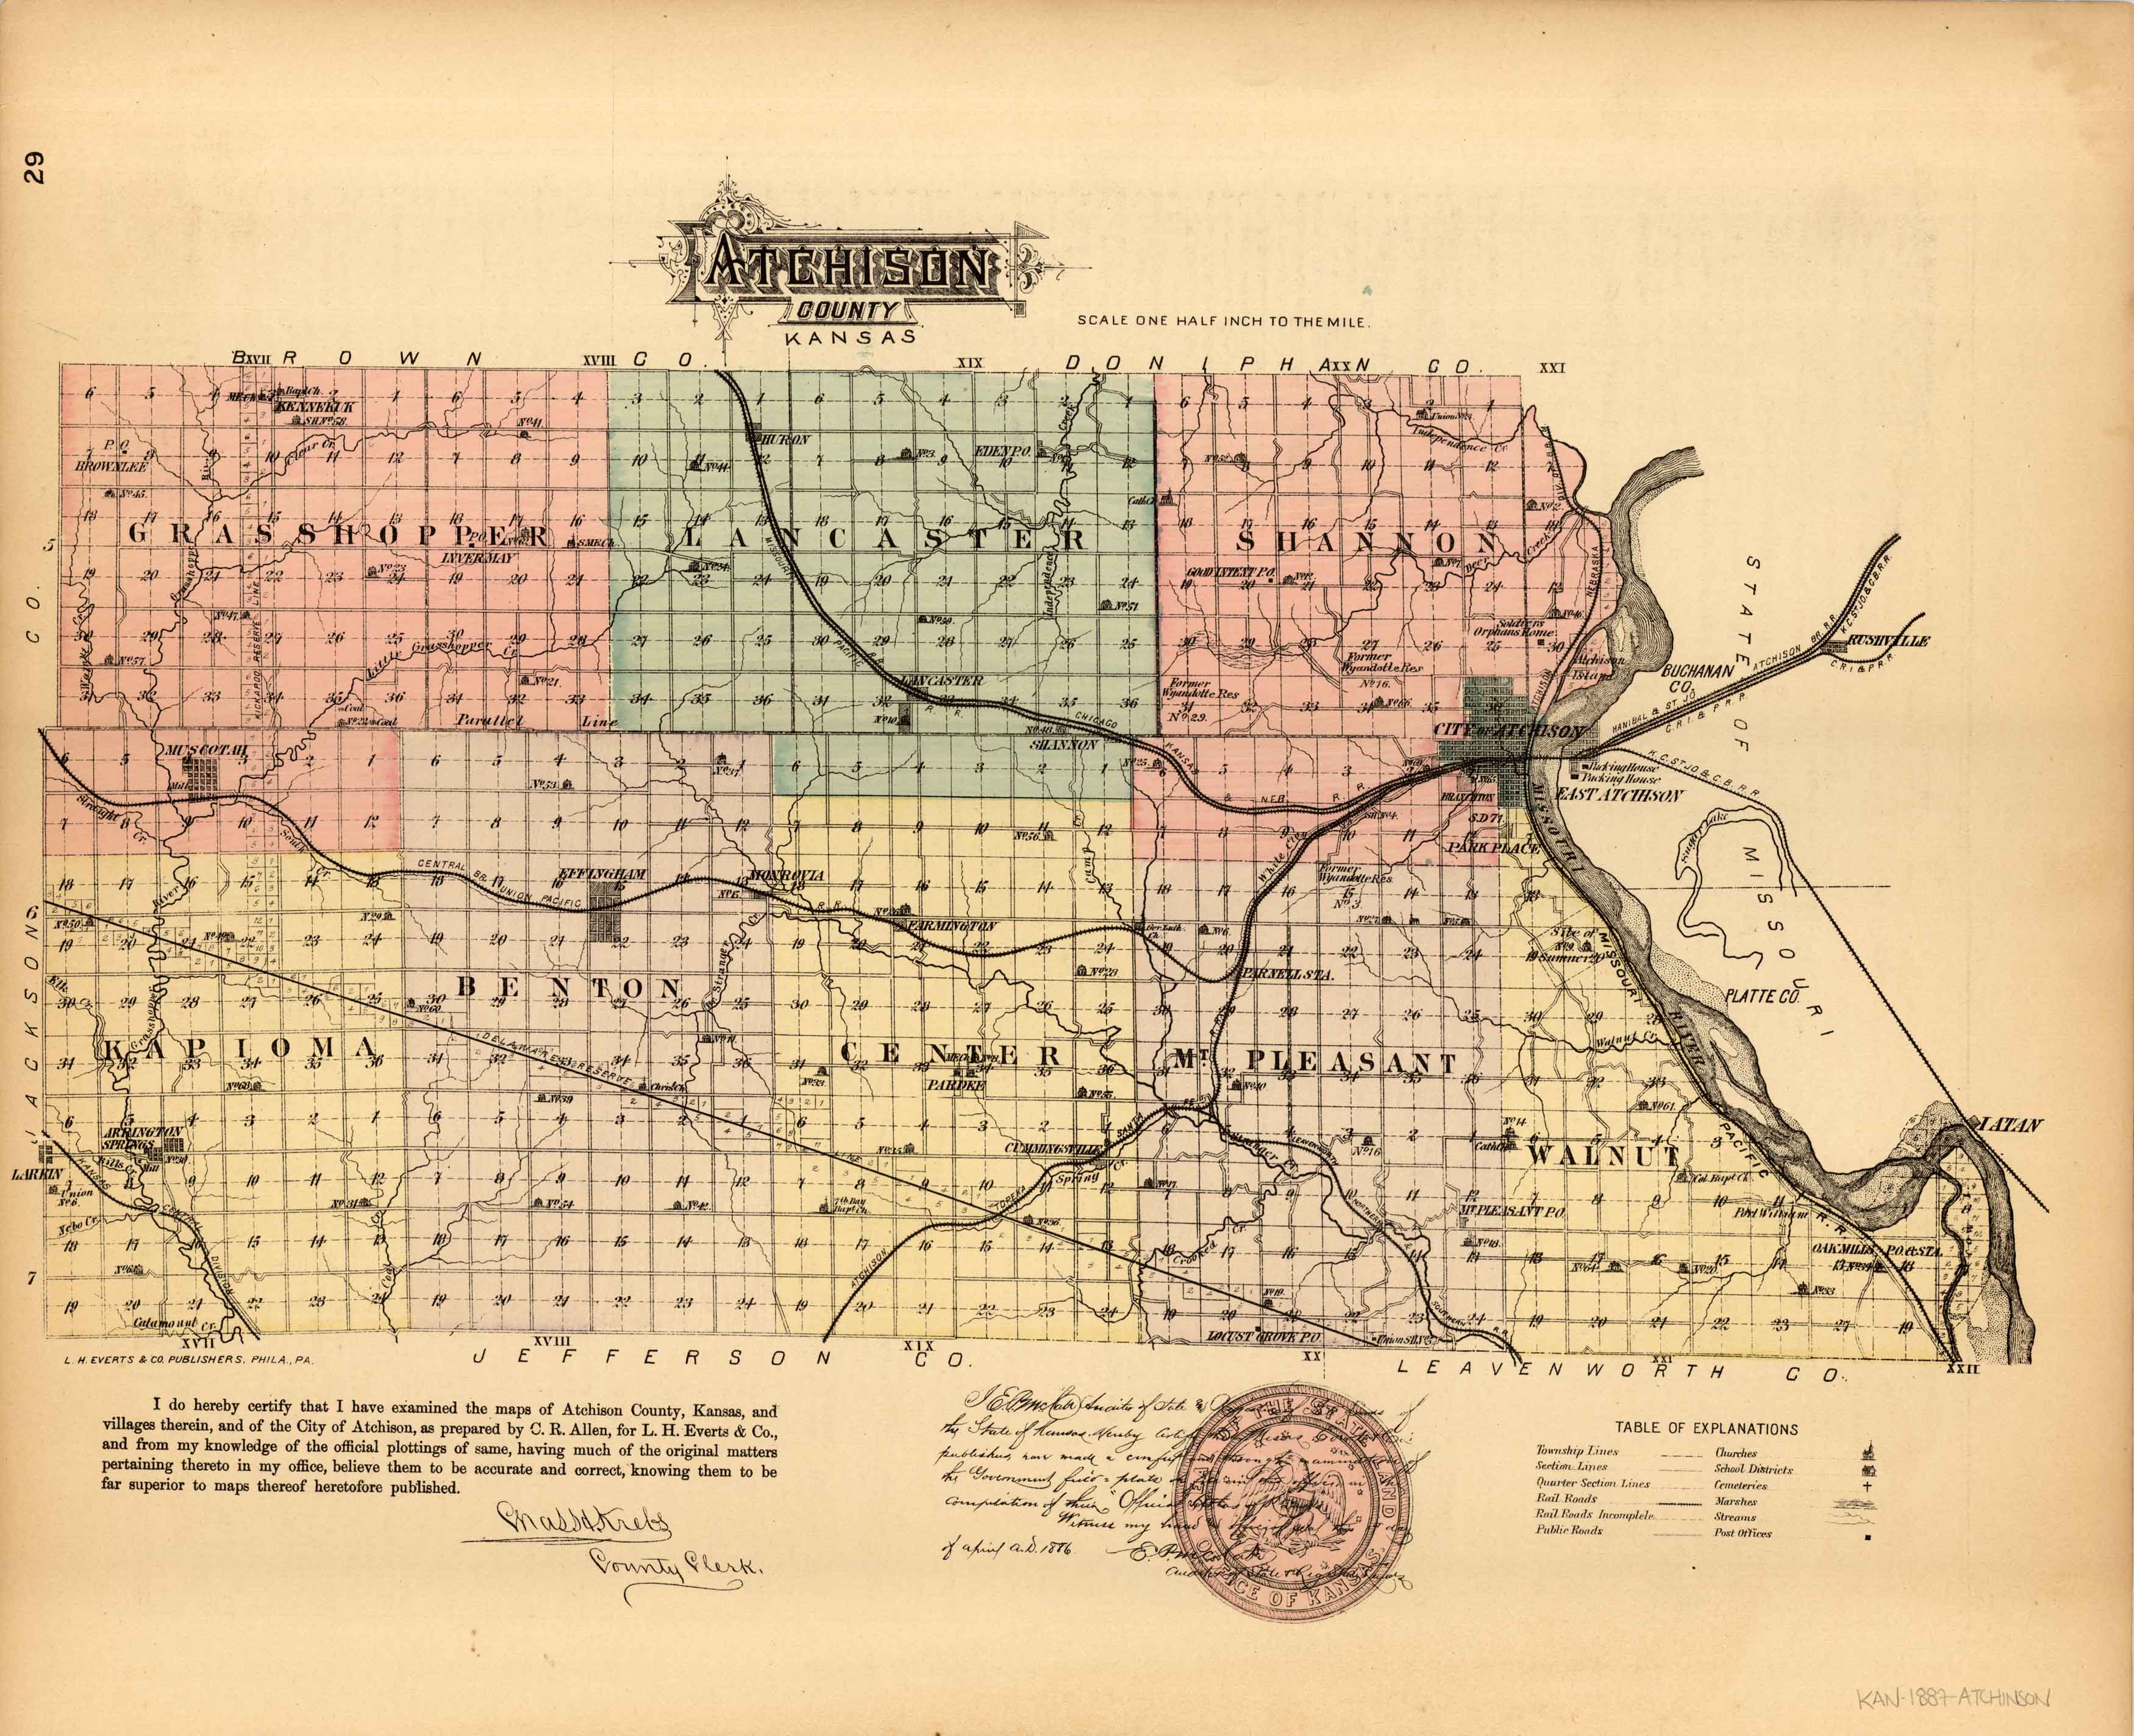 L.H. Evert's 1887 Map of Atchison County, Kansas Art Source International